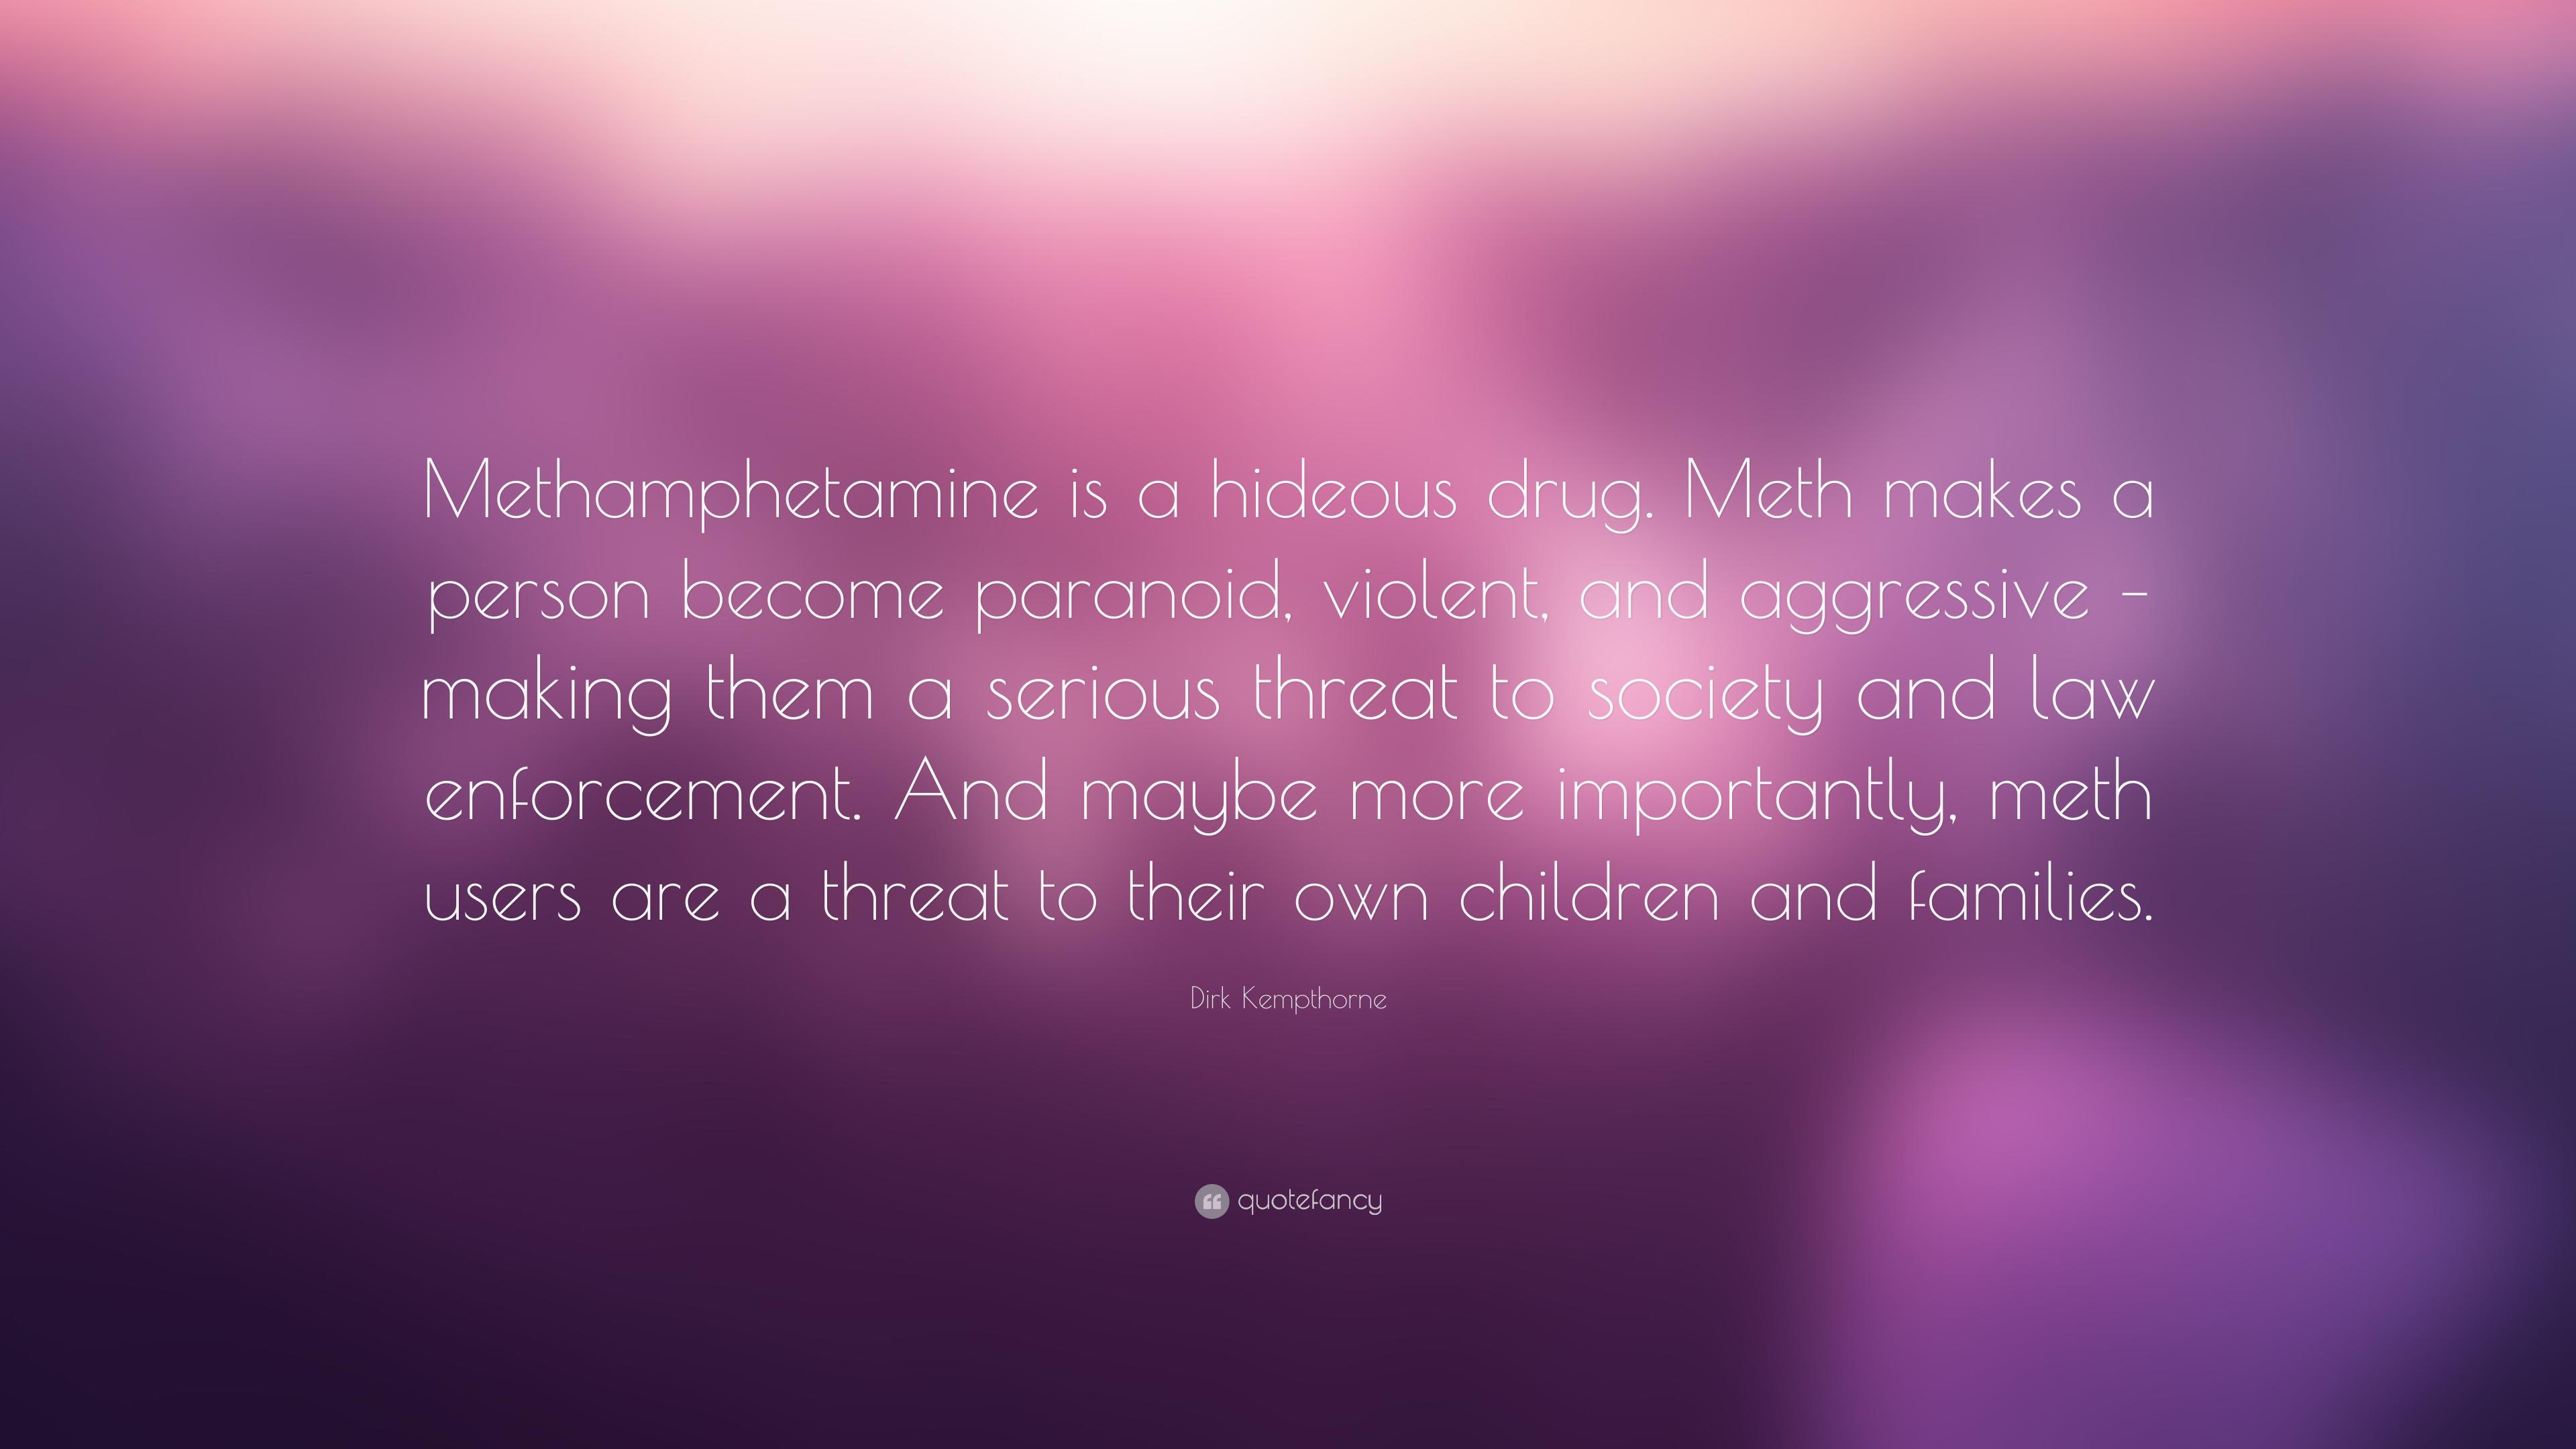 Dirk Kempthorne Quote: “Methamphetamine is a hideous drug